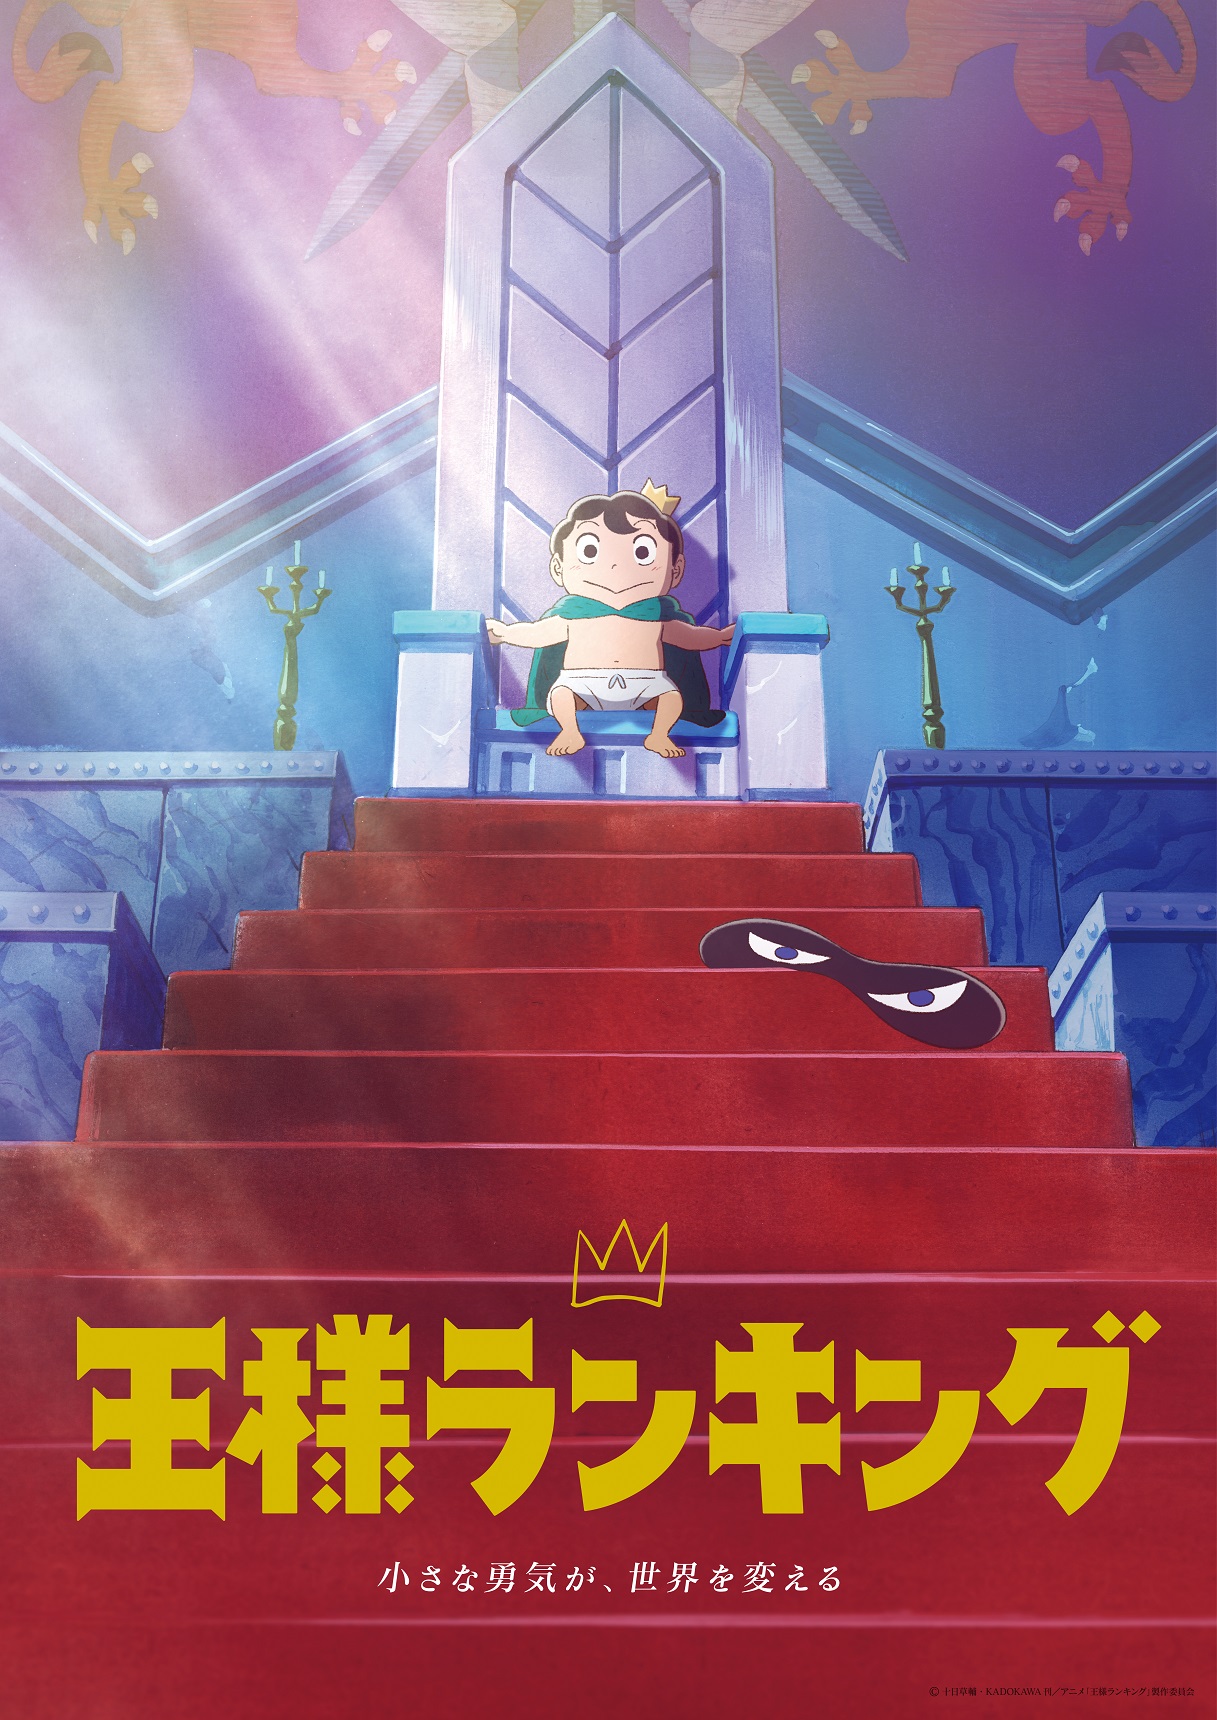 Tvアニメ 王様ランキング Blu Ray Dvd Box オリジナルサウンドトラック発売決定 各巻の特典内容も公開 株式会社アニプレックスのプレスリリース